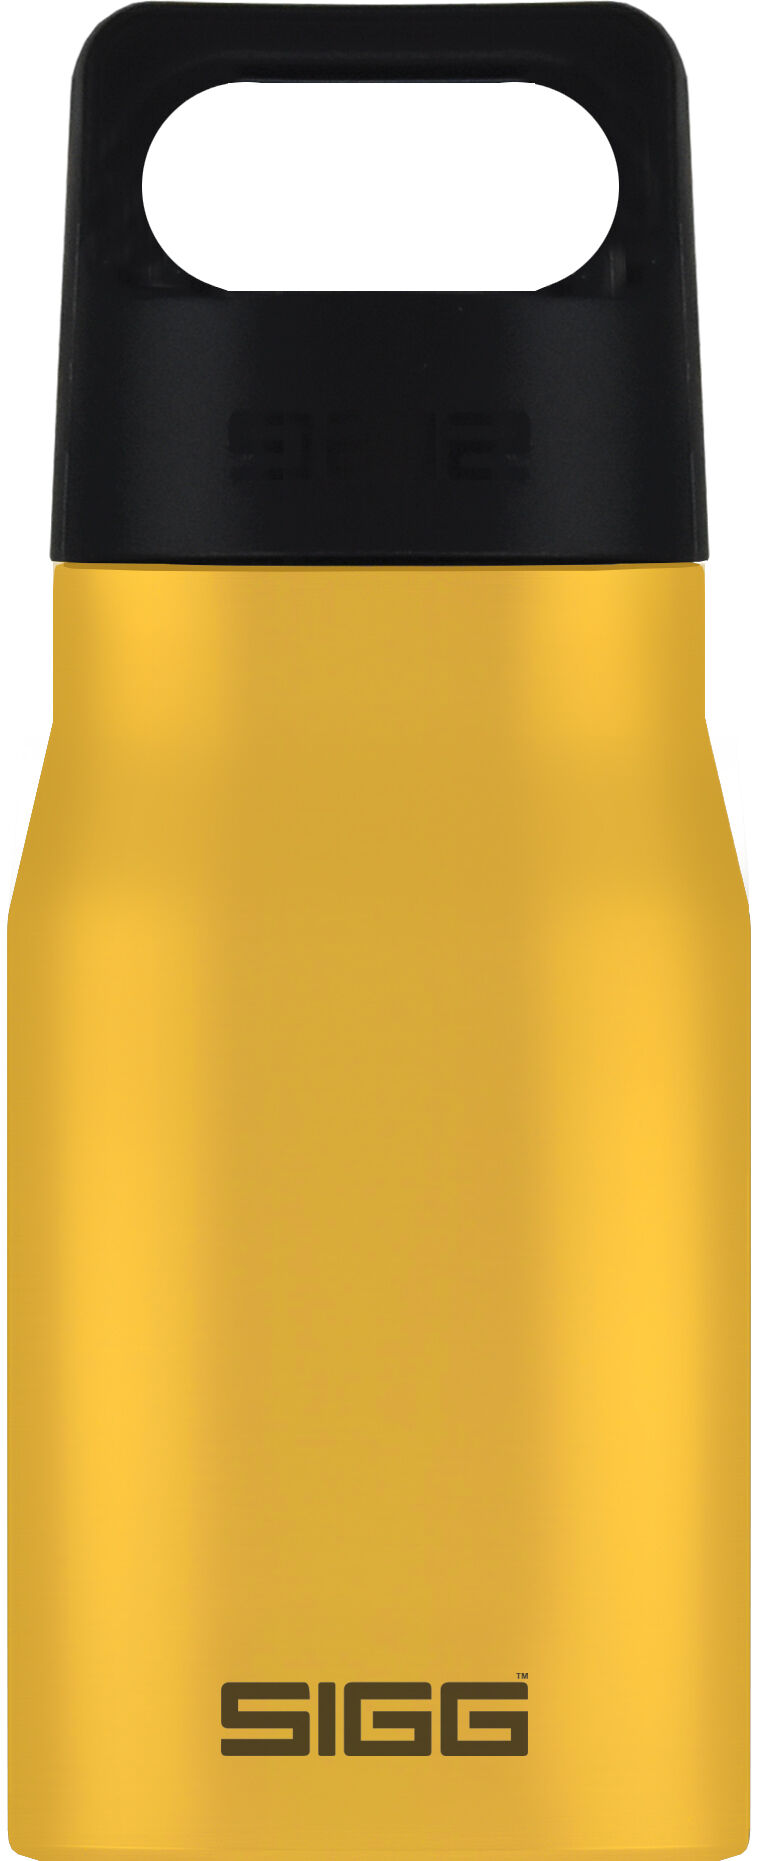 Sigg Explorer 0.55 L - Water bottle